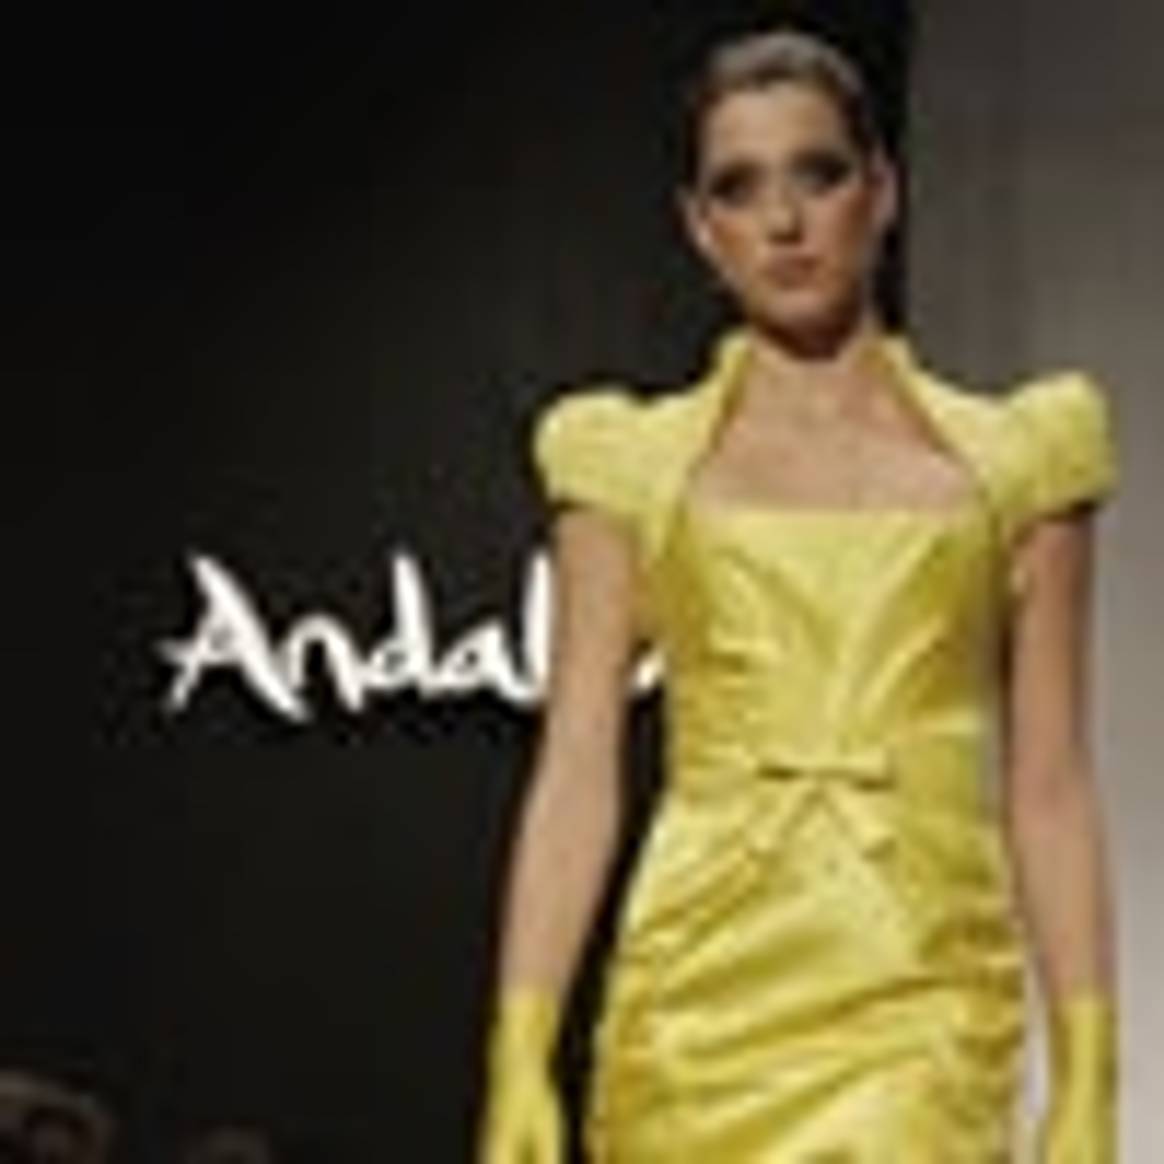 Cuarta edición de Andalucía de Moda